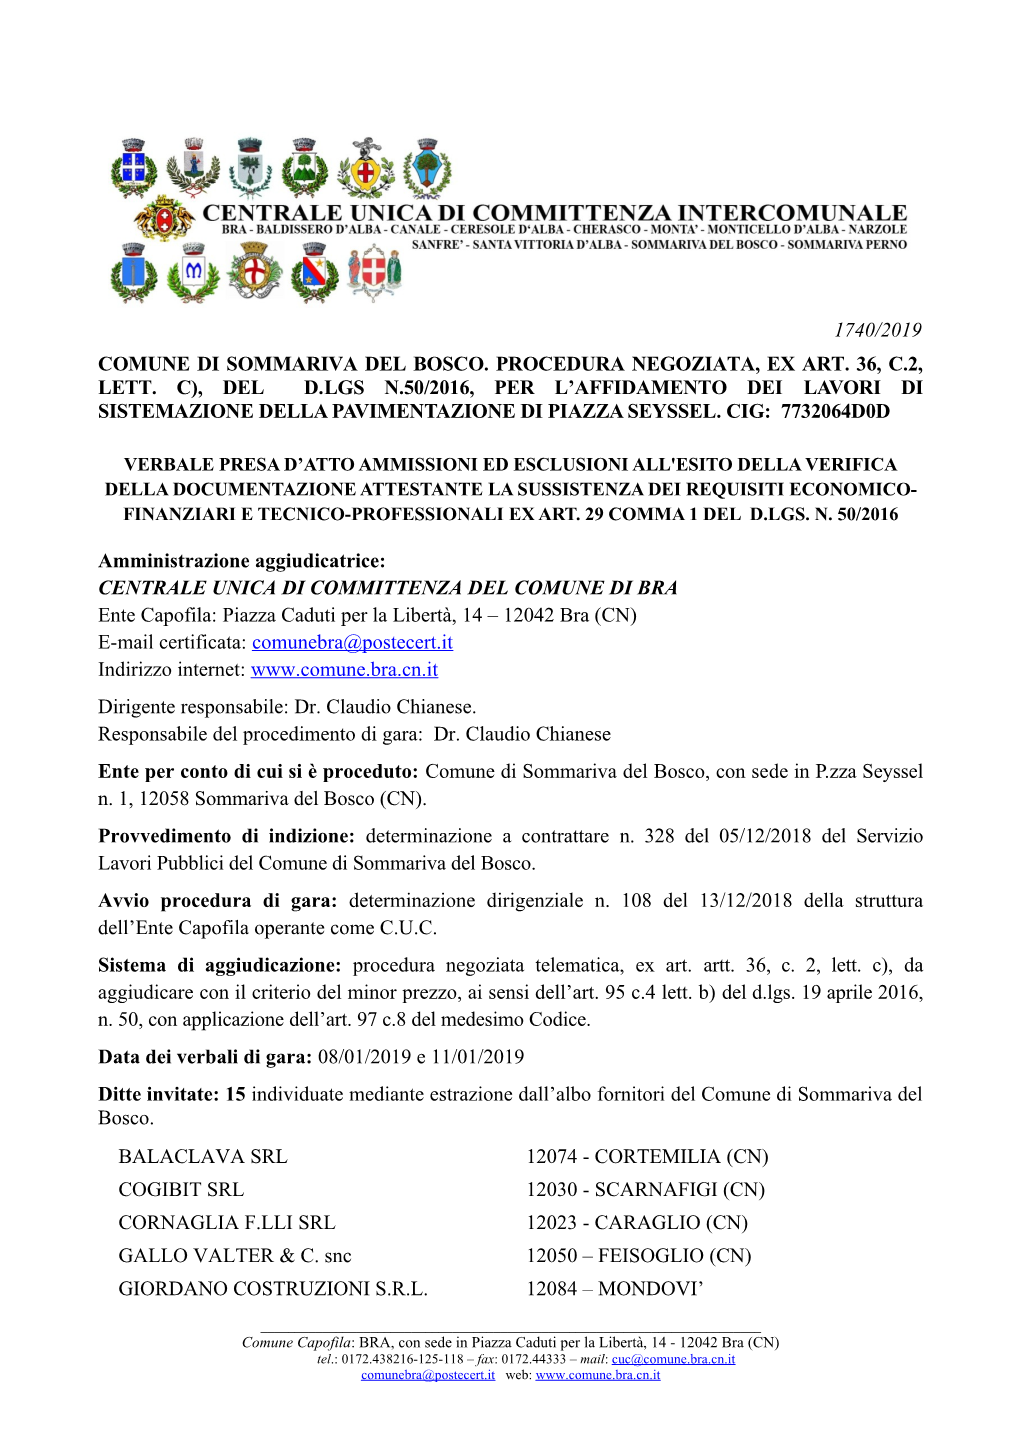 1740/2019 Comune Di Sommariva Del Bosco. Procedura Negoziata, Ex Art